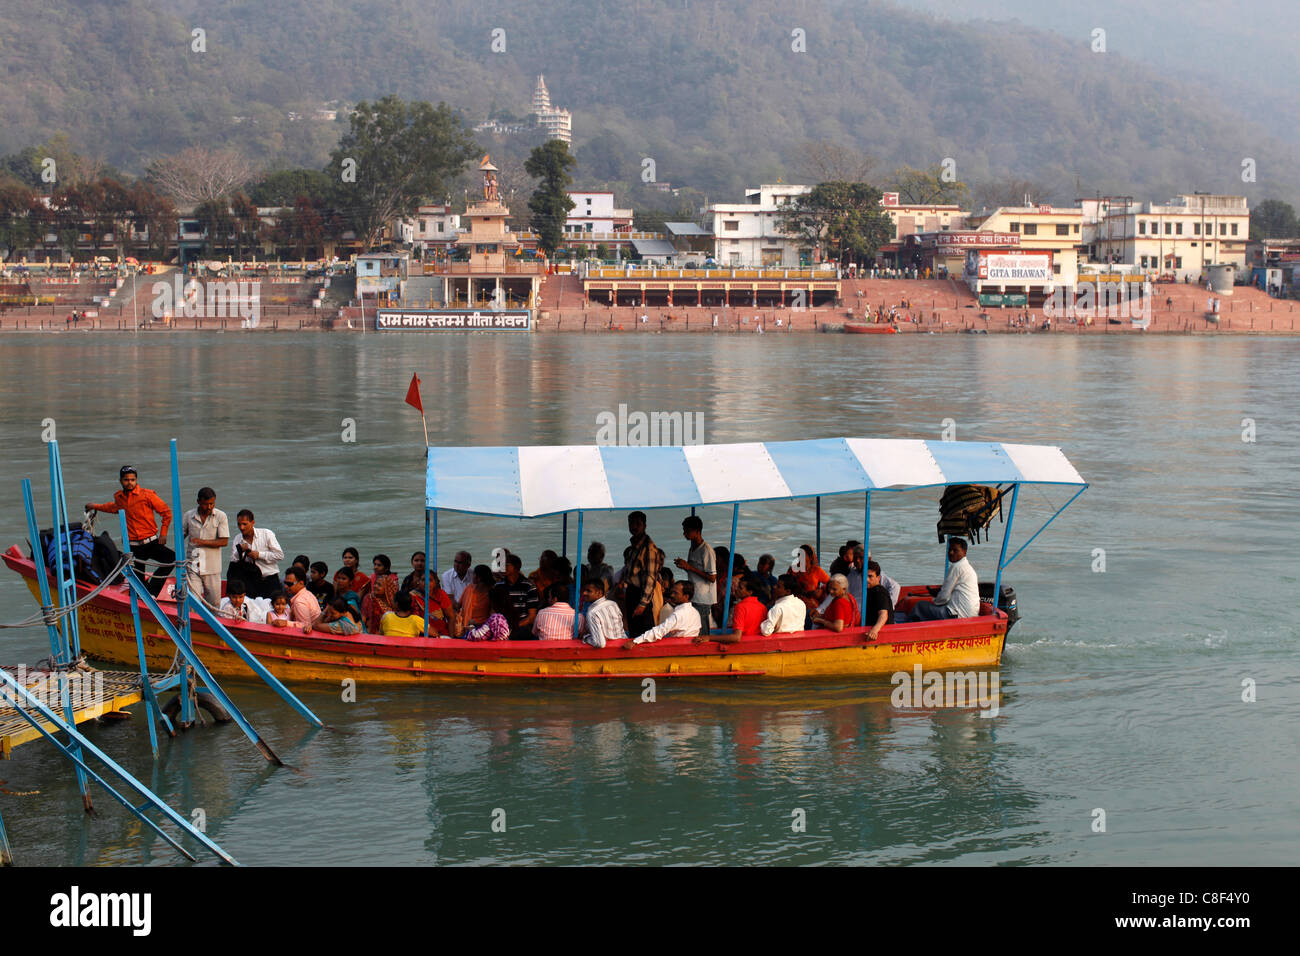 River Ganges boat, Rishikesh, Uttarakhand, India Stock Photo